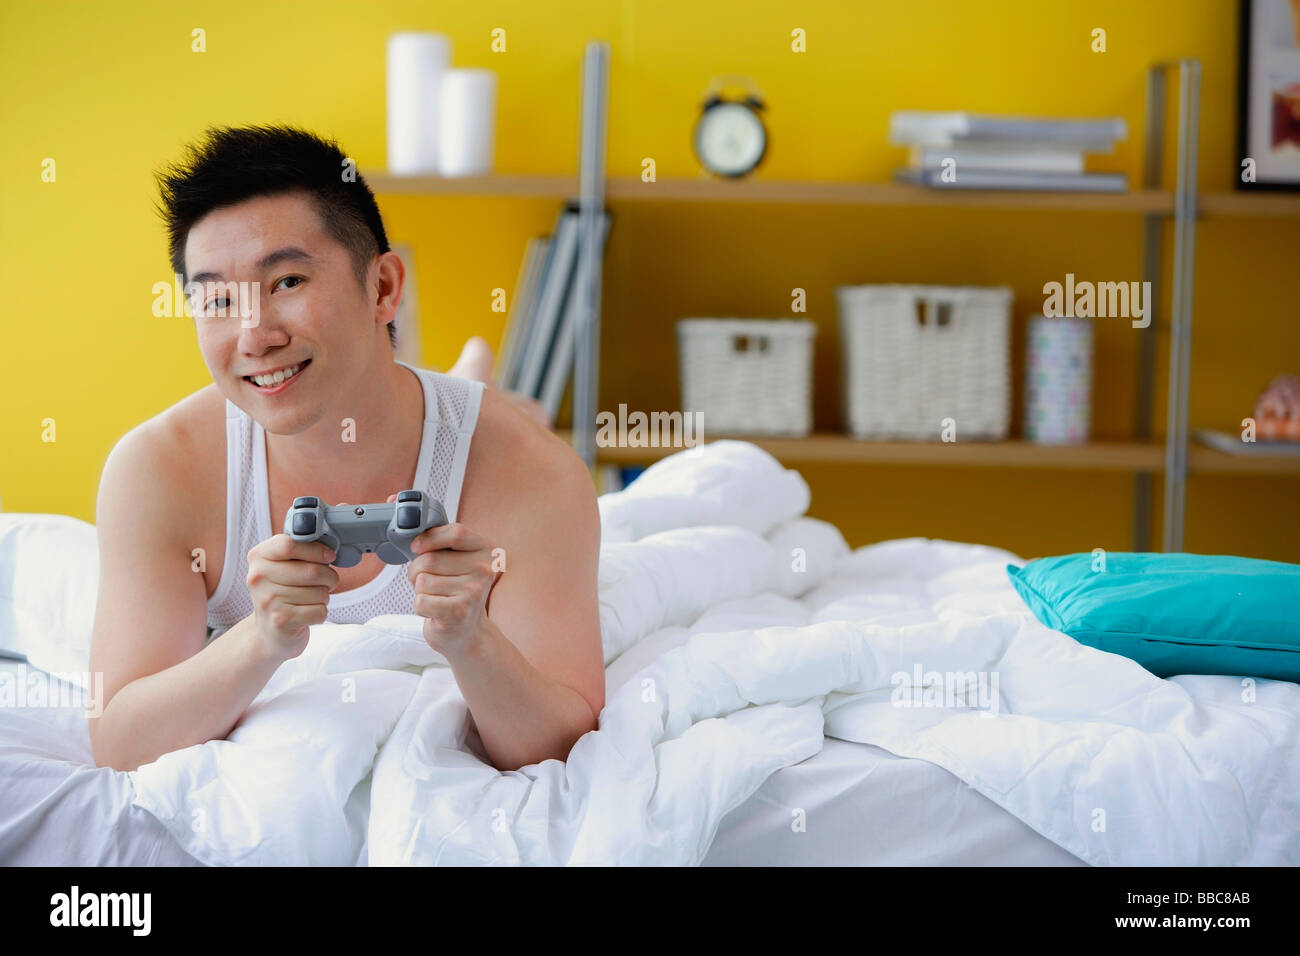 Hombre tumbado en la cama, manteniendo el control de videojuegos Foto de stock